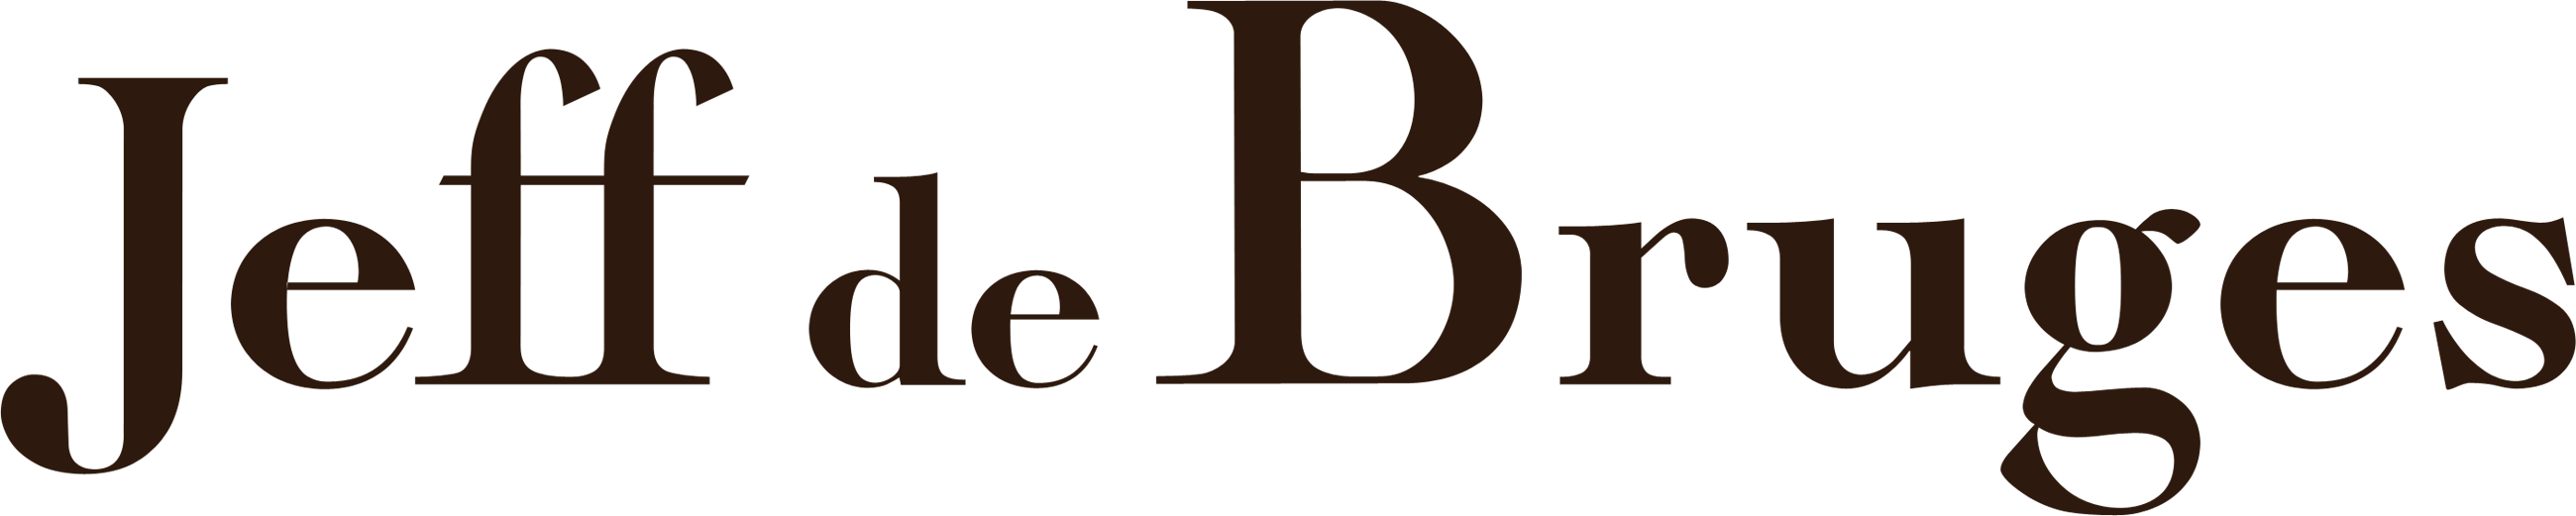 Brand logo for Jeff de Bruges